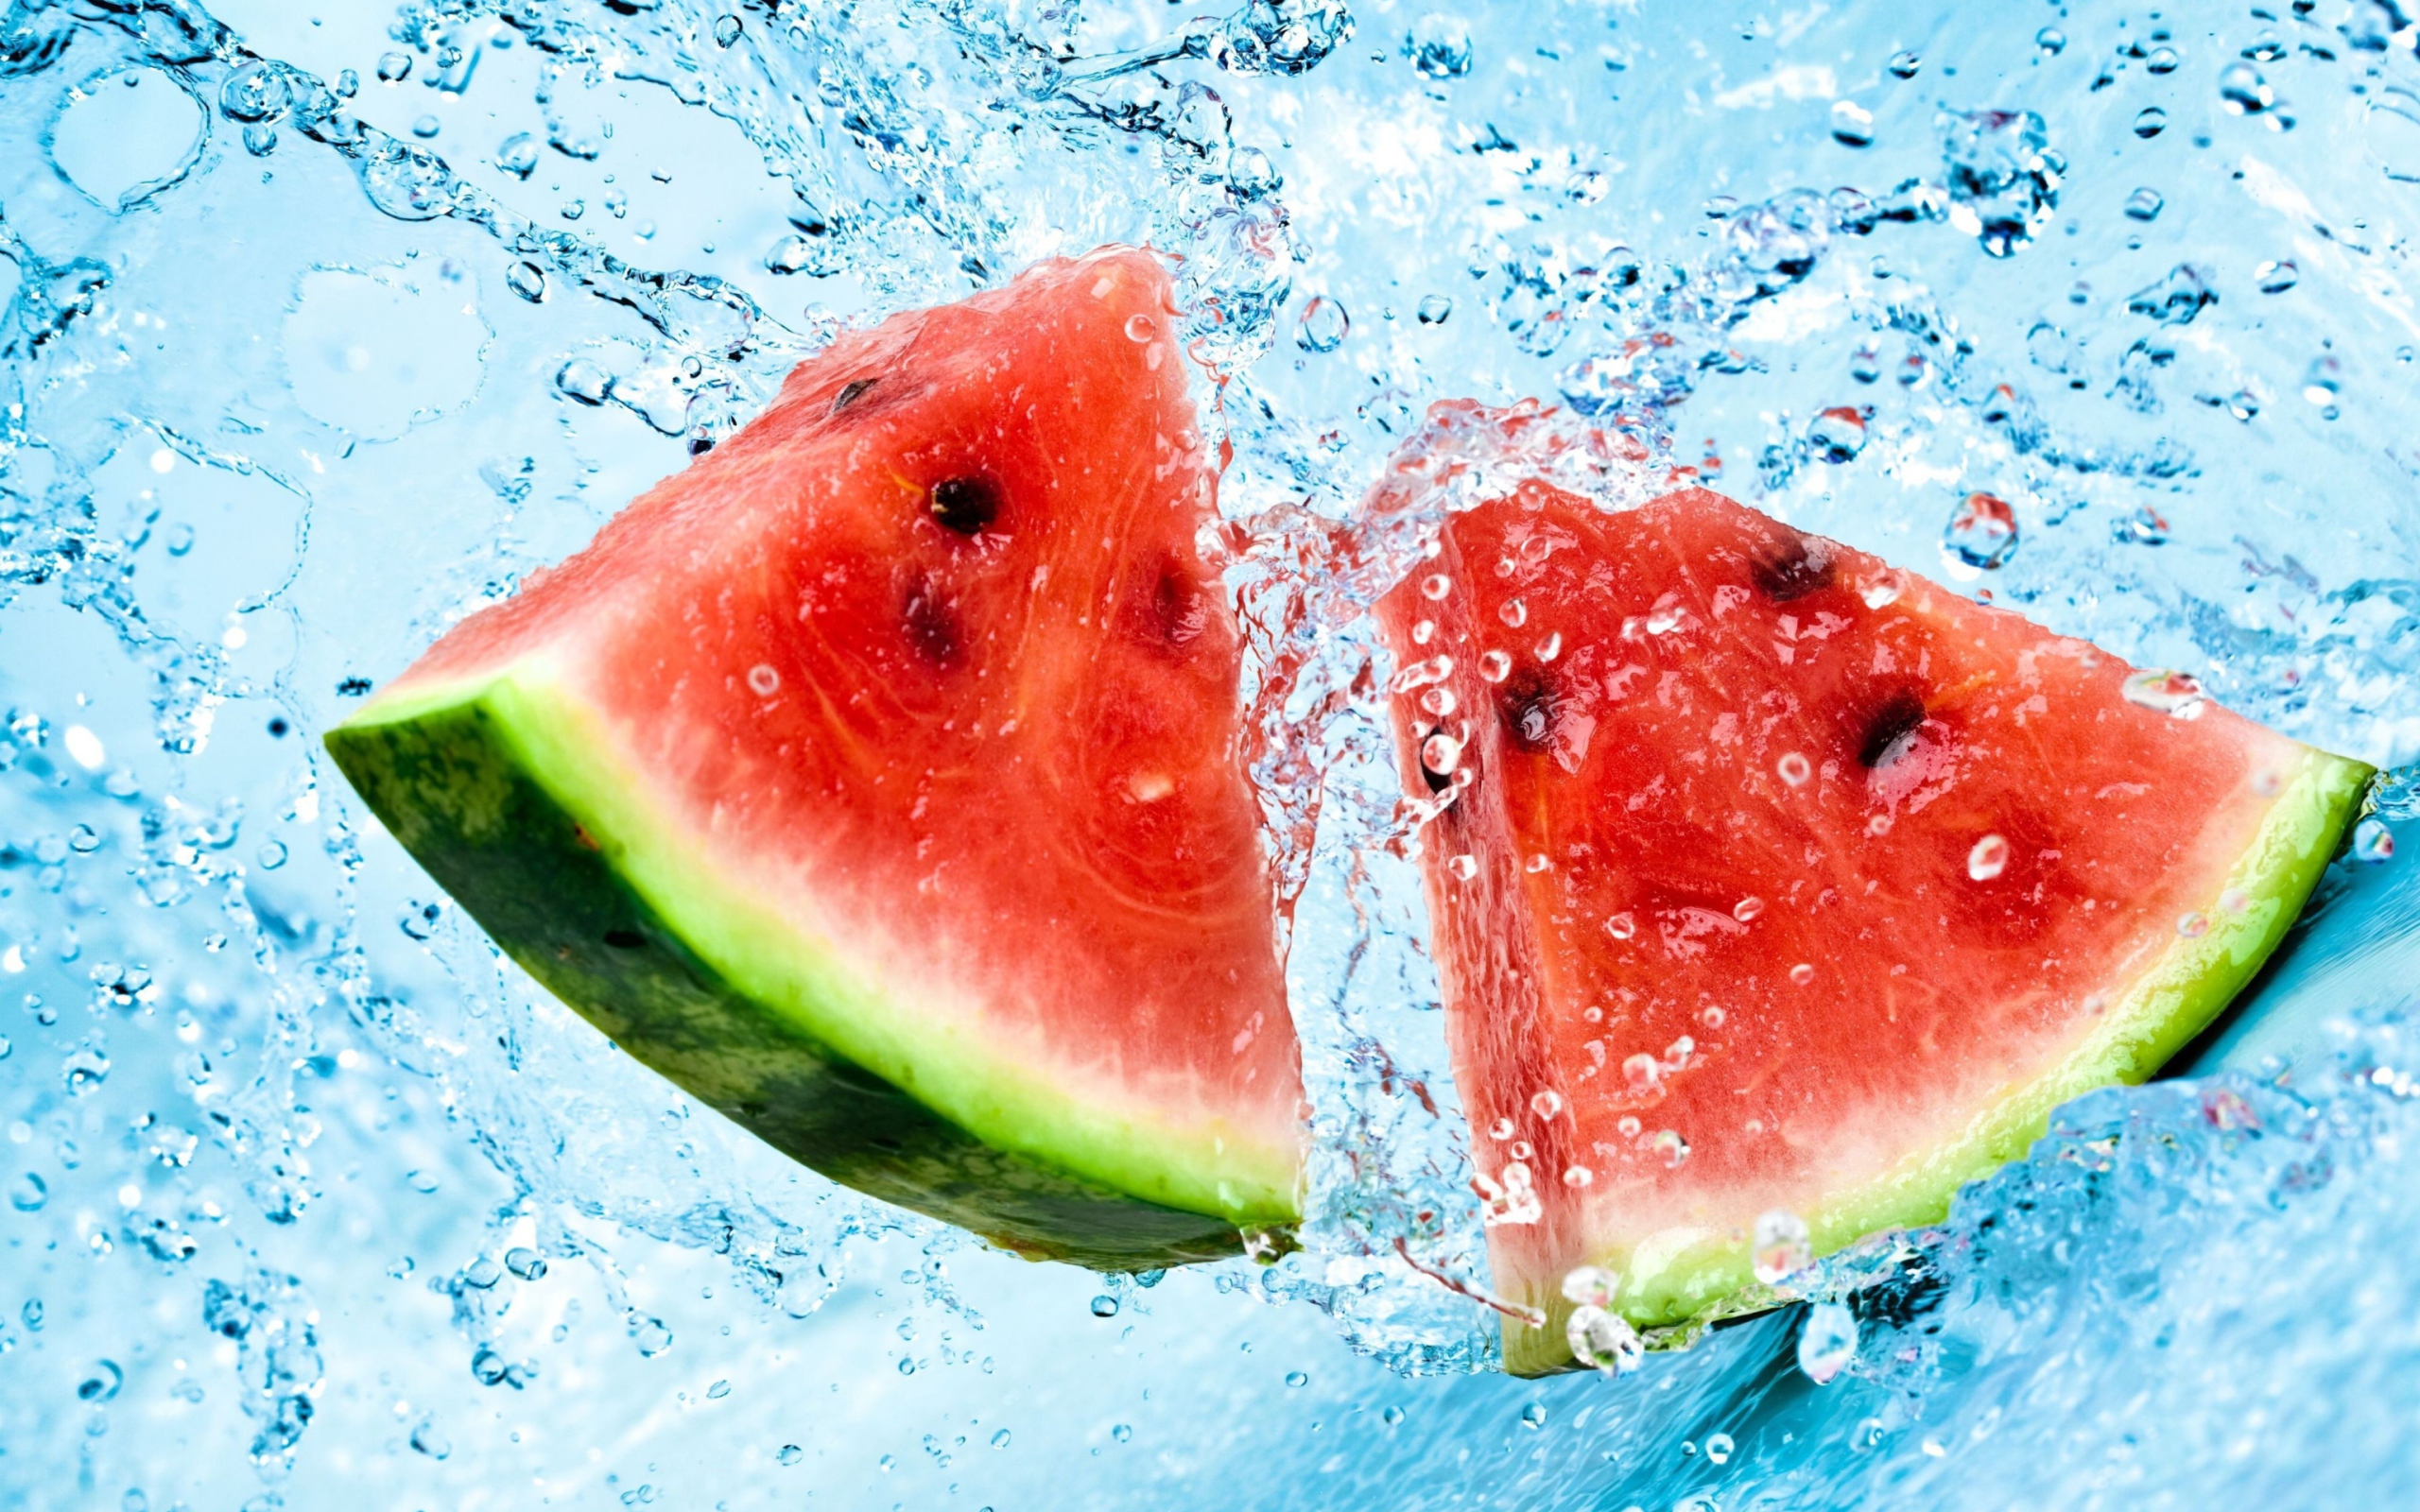 Watermelon In Water wallpaper 2560x1600